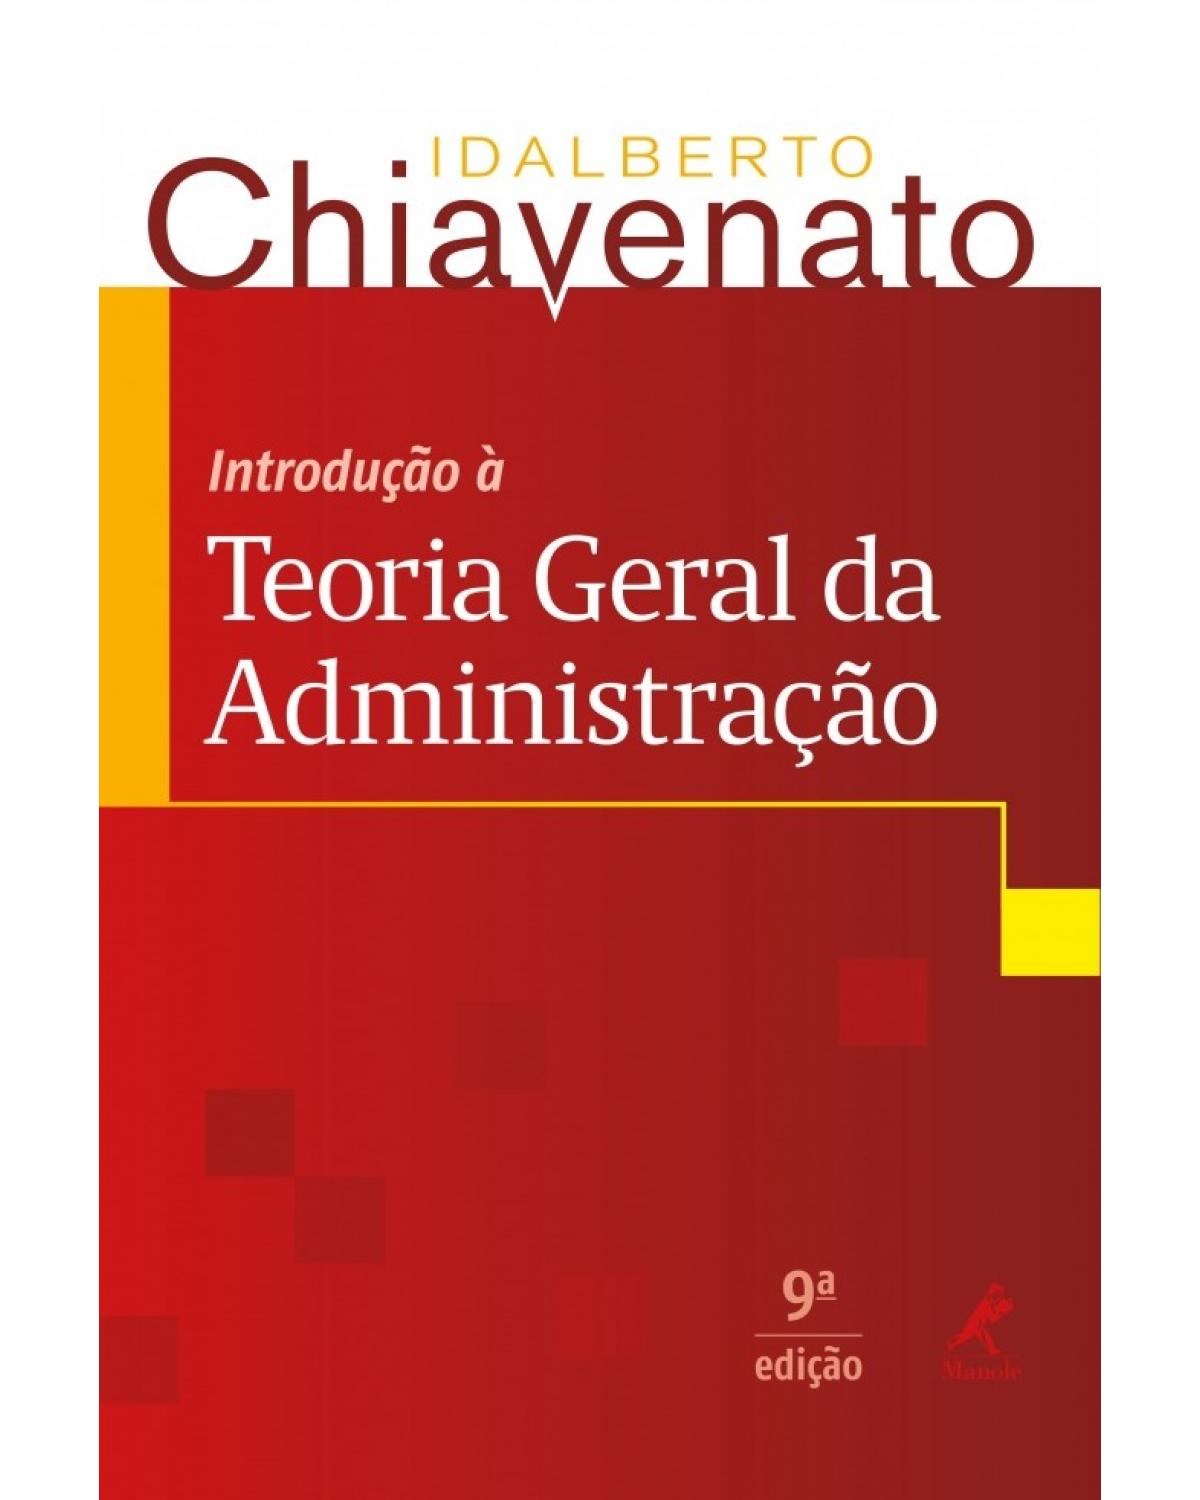 Introdução à teoria geral da administração - 9ª Edição | 2014